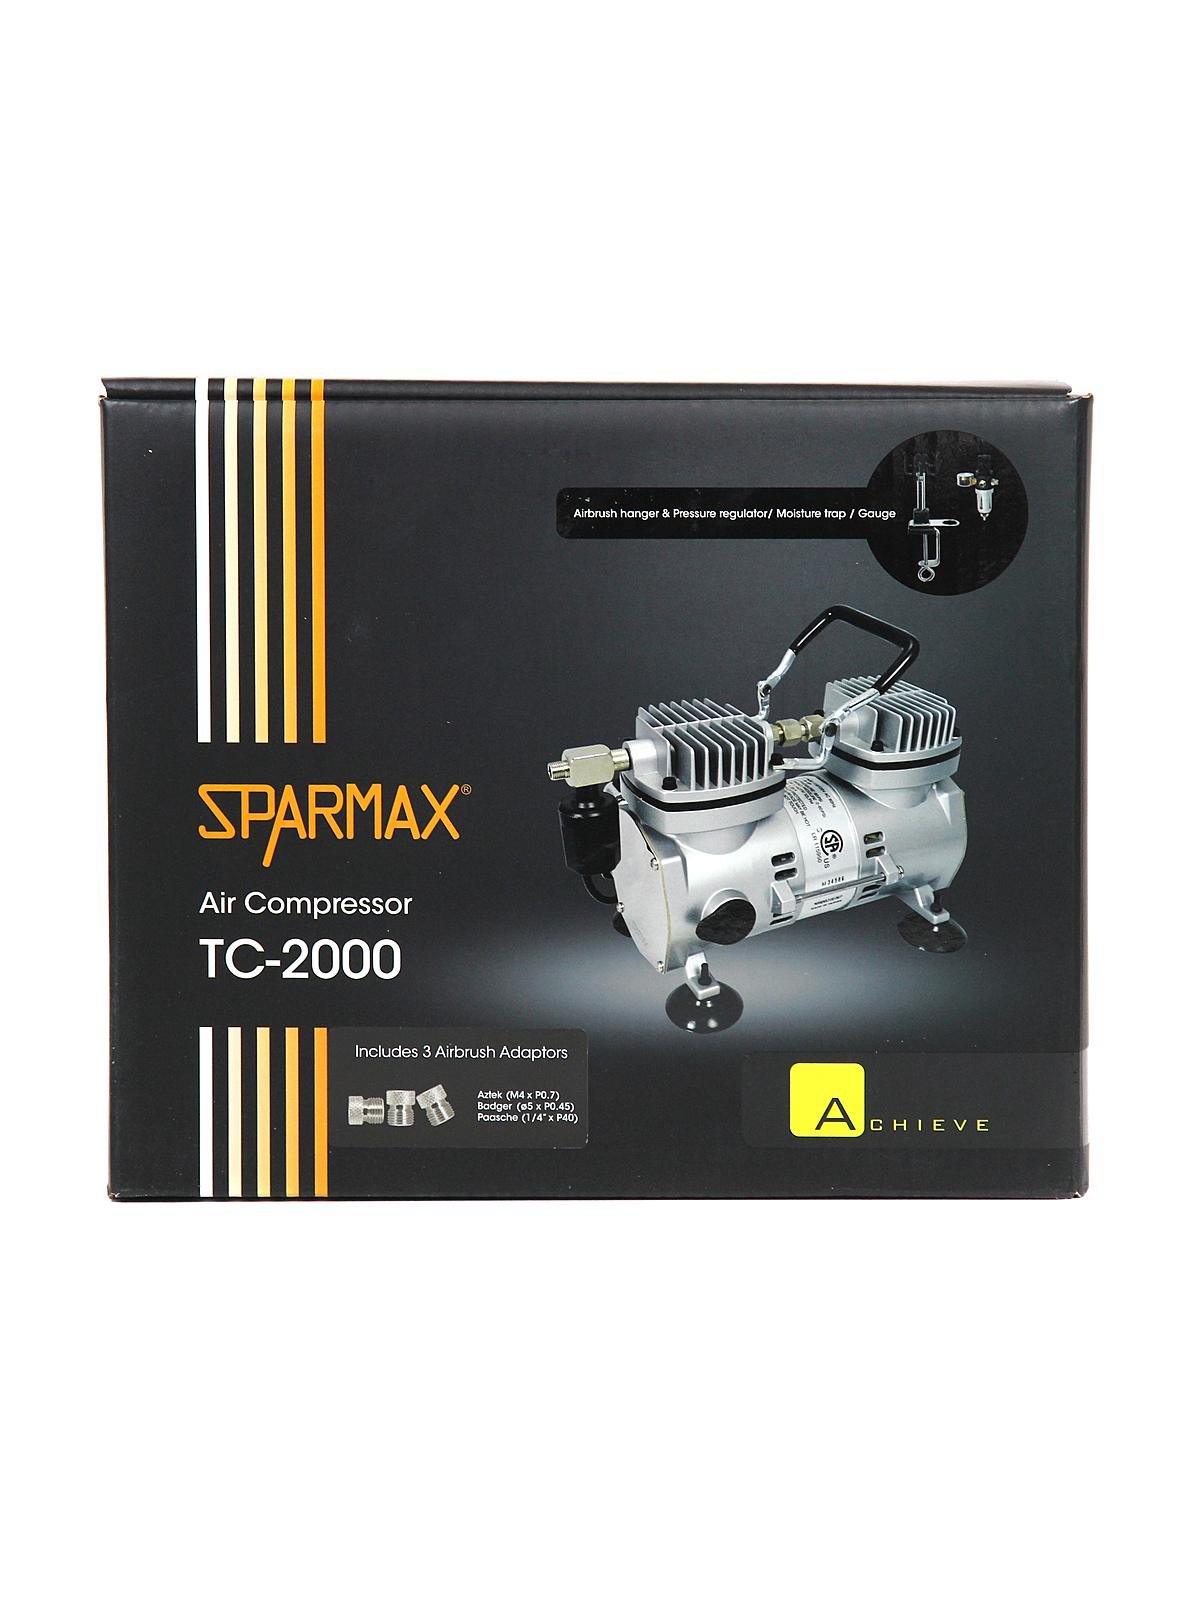 Sparmax - TC-2000 Air Compressor